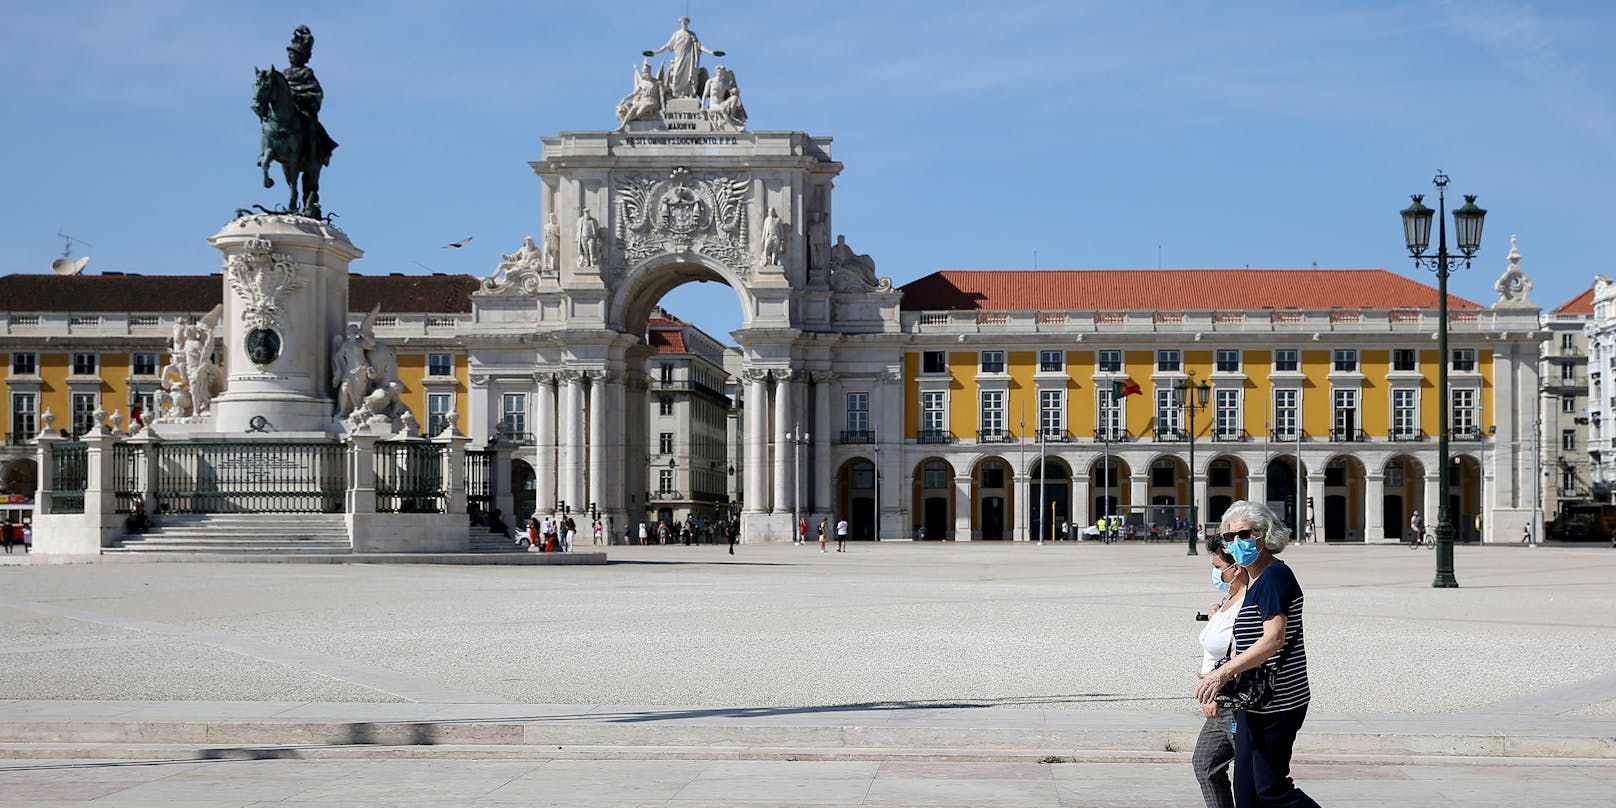 Die Bundesregierung warnt vor nicht notwendigen, touristischen Reisen in die Region Lissabon.